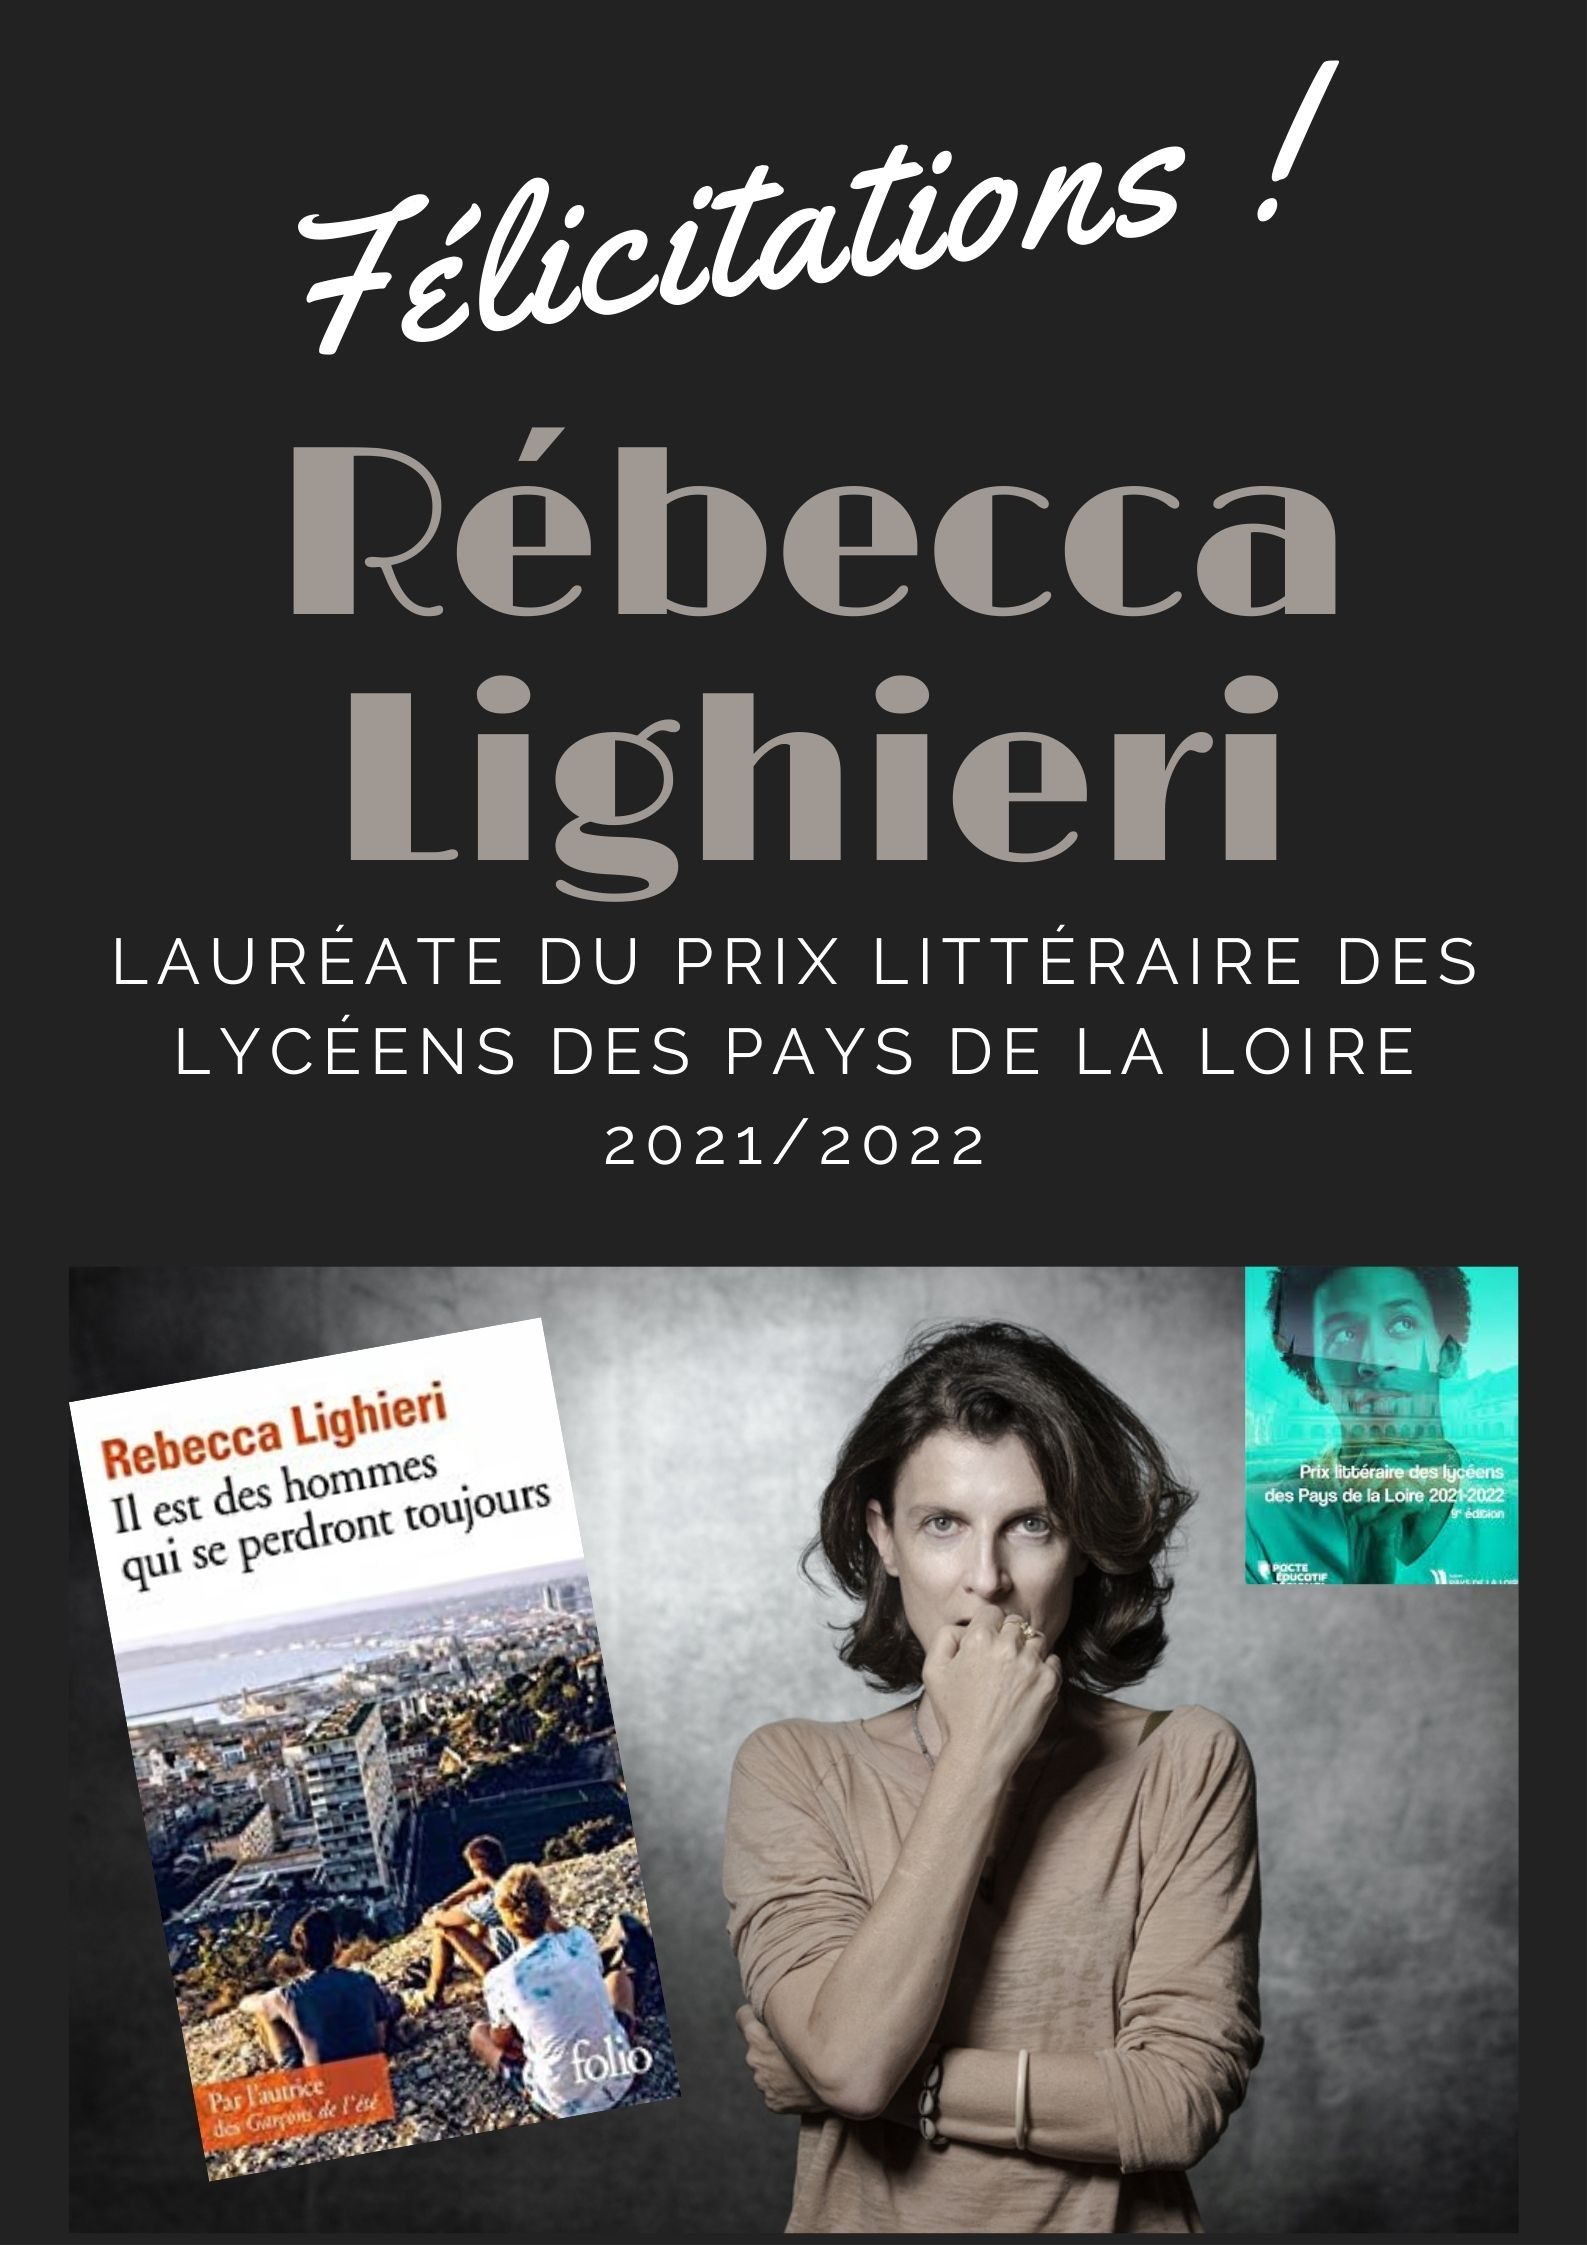 Rebecca Lighieri, lauréate du prix littéraire des lycéens des Pays